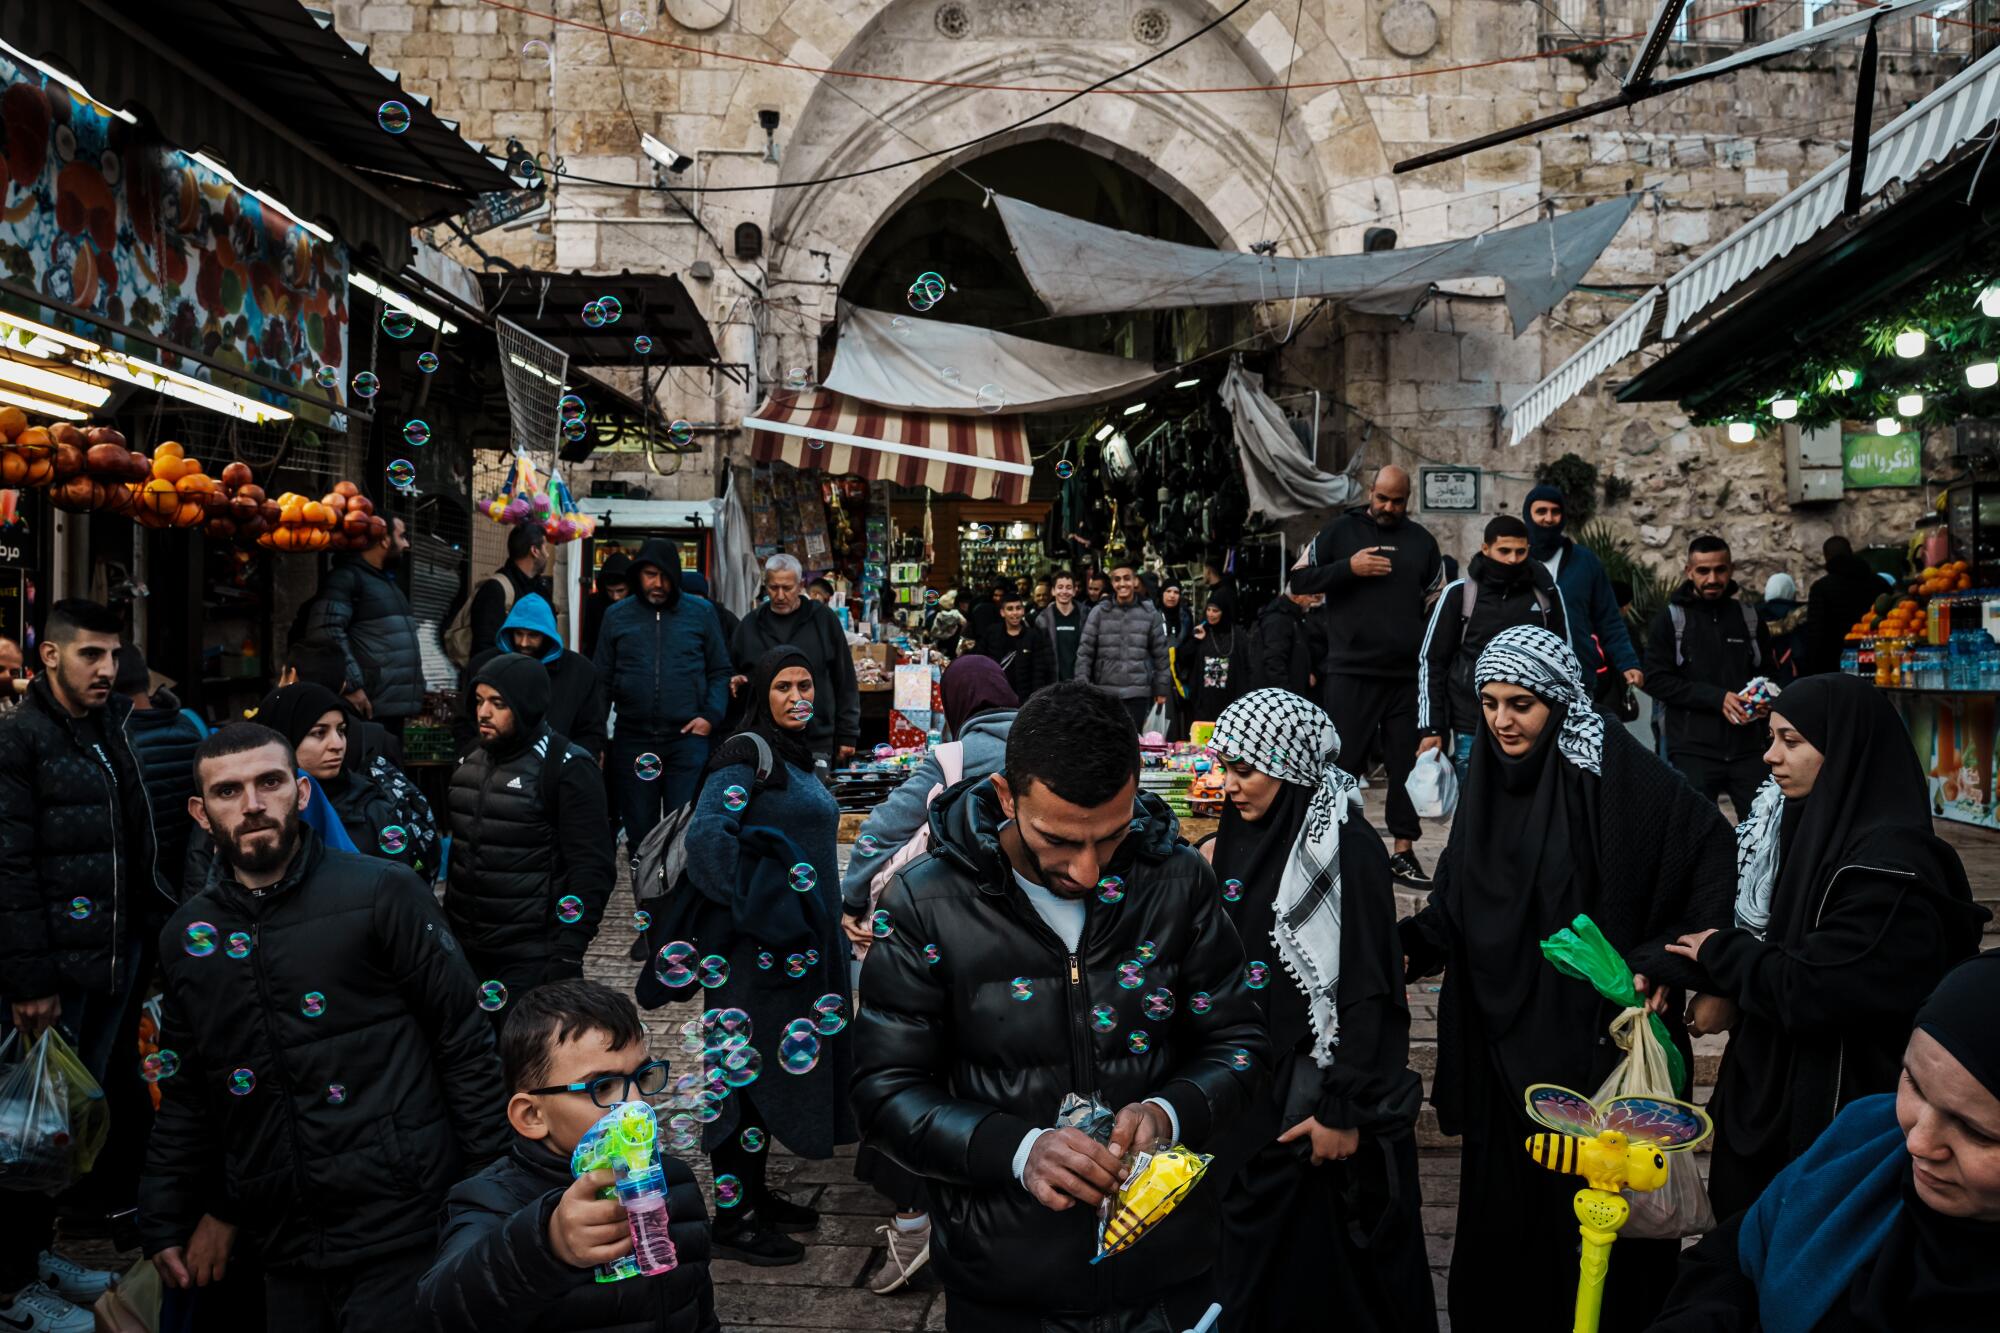 Muçulmanos devotos entram na Cidade Velha de Jerusalém pelo Portão de Damasco.